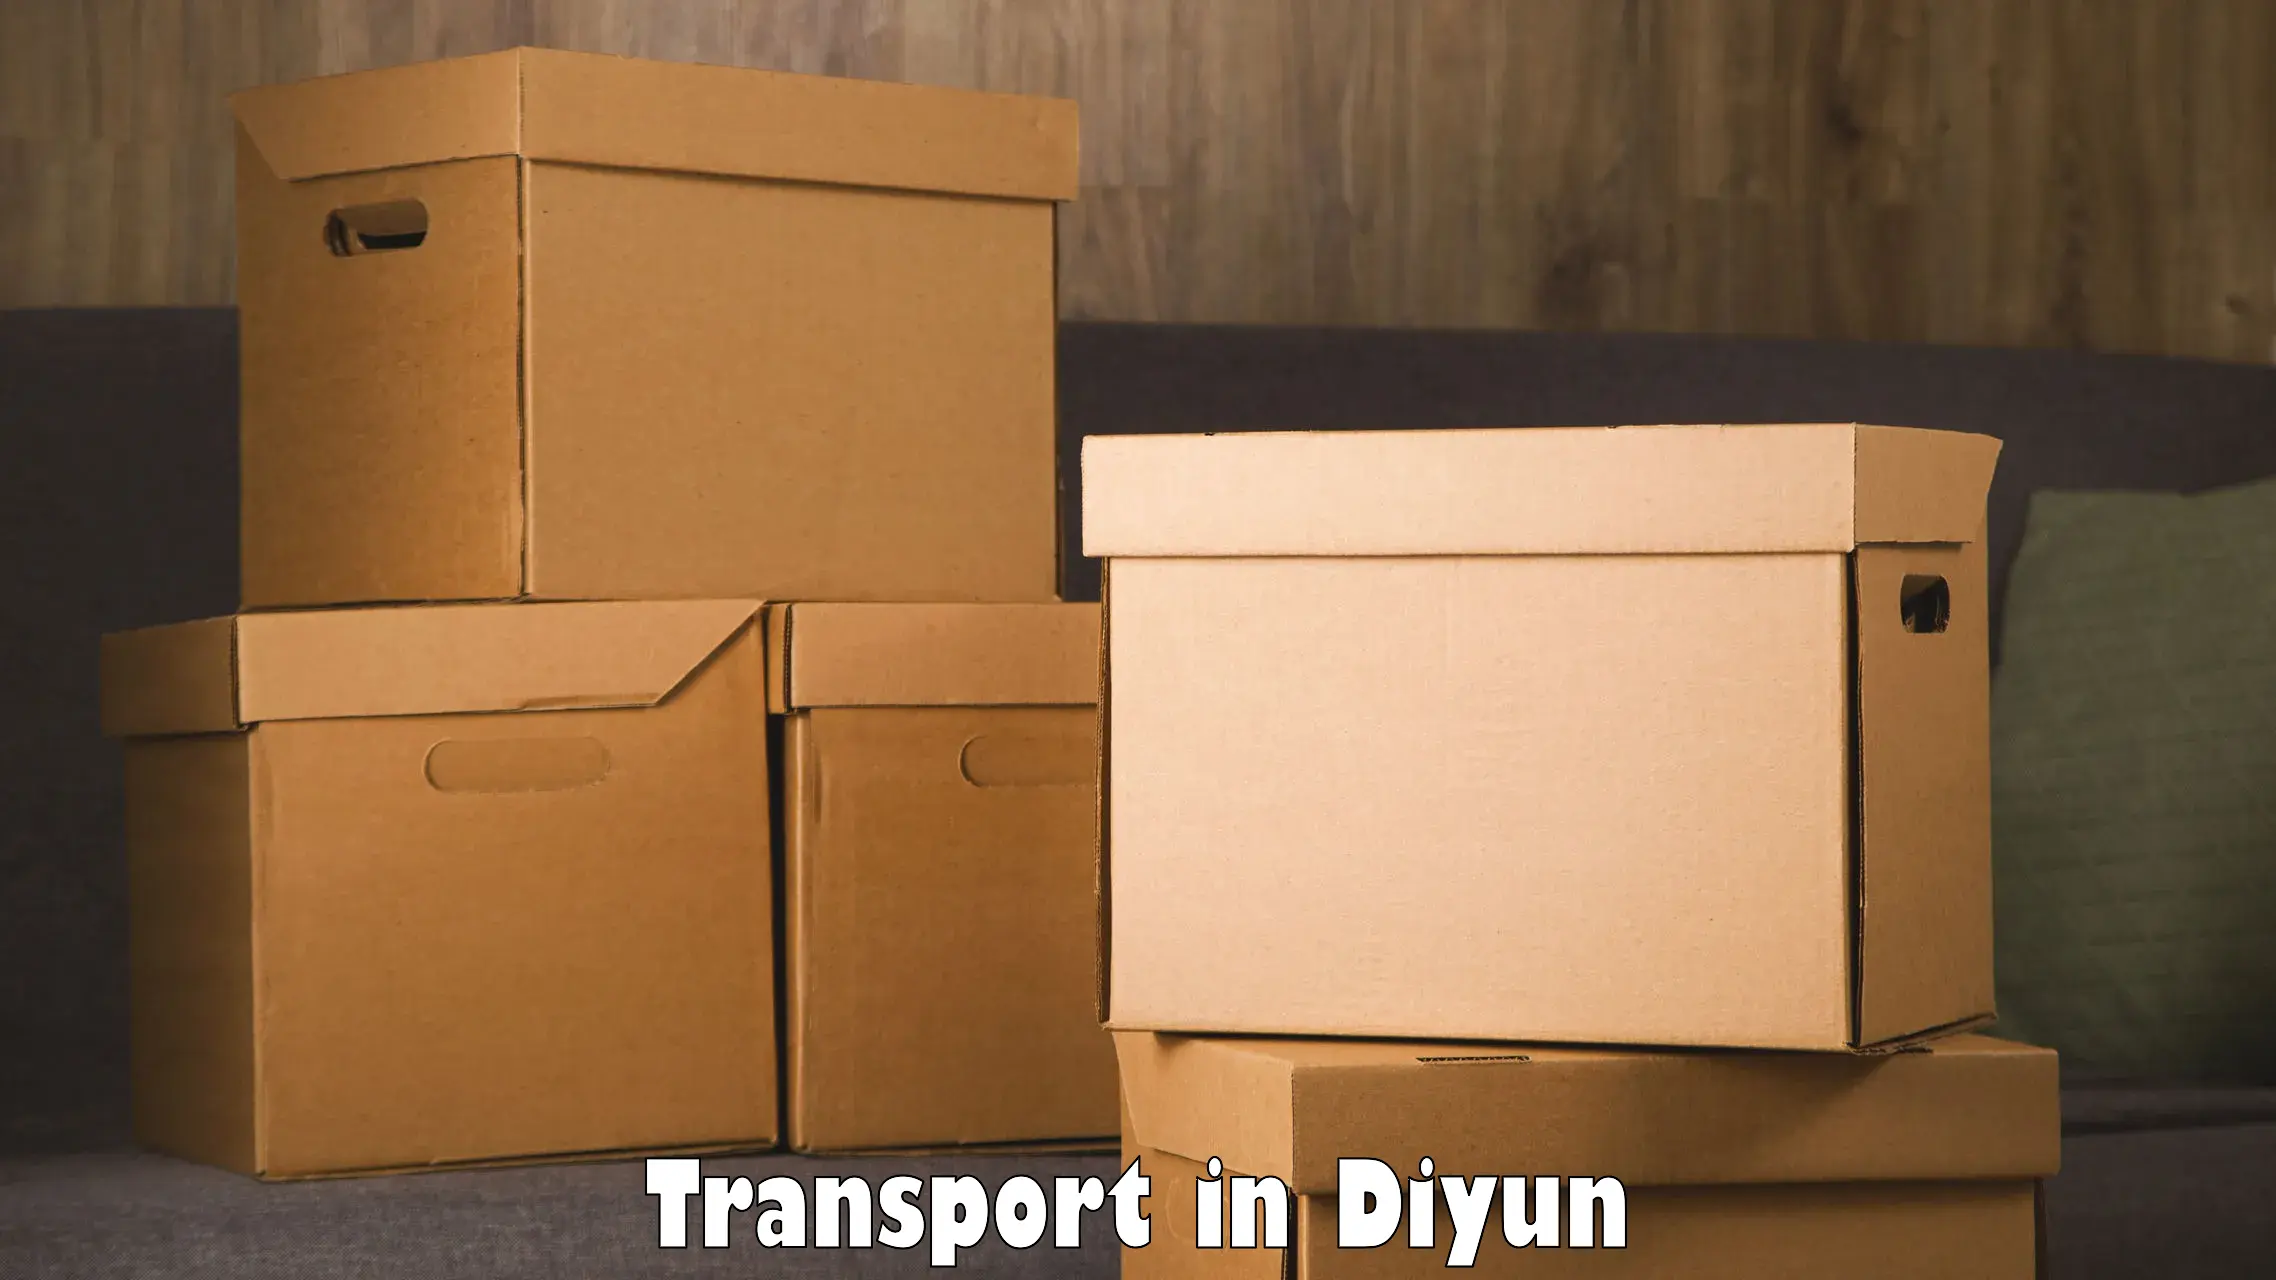 Interstate transport services in Diyun